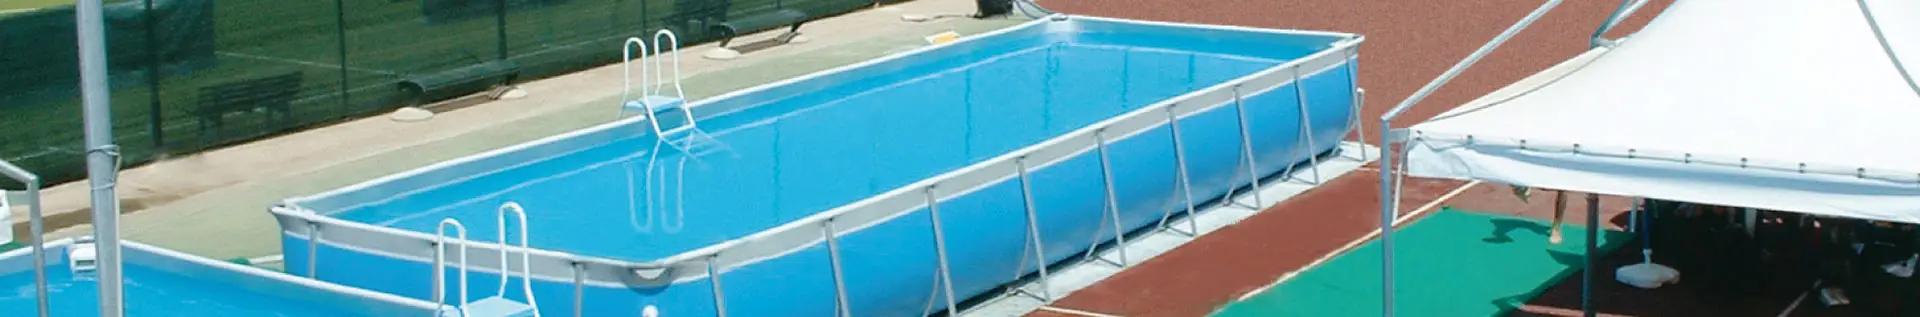 piscina modello ambra - Cod. AM6550